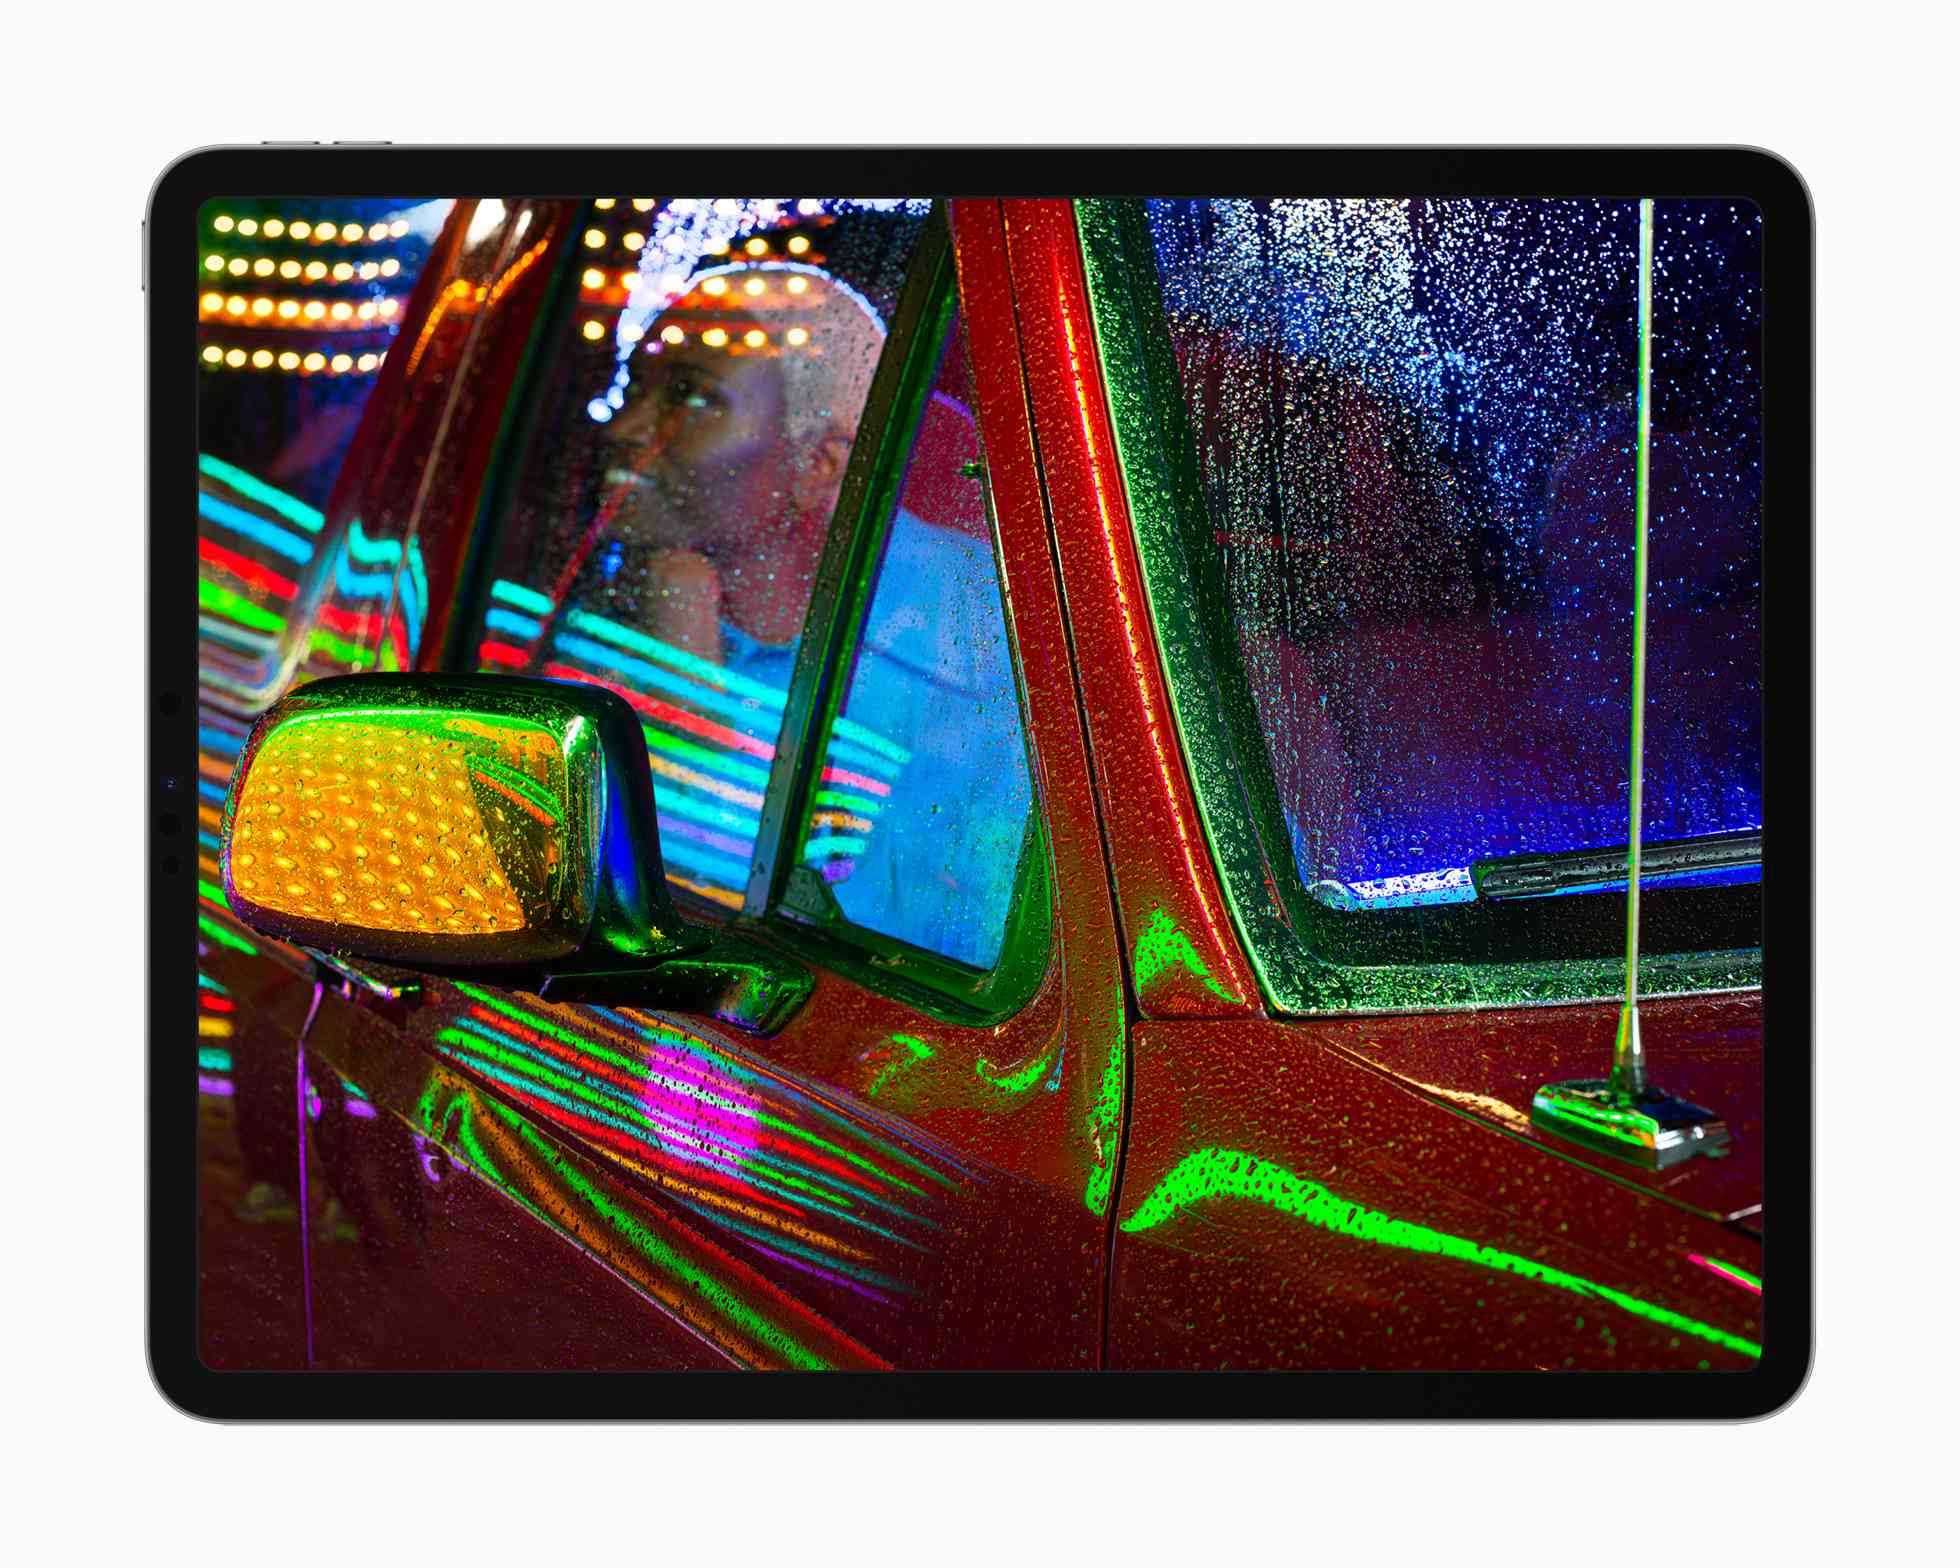 Apple iPad Pro liquidXDR-skärm som visar ett foto av någon i en pickup med neonljus som reflekterar från metallen och glaset.